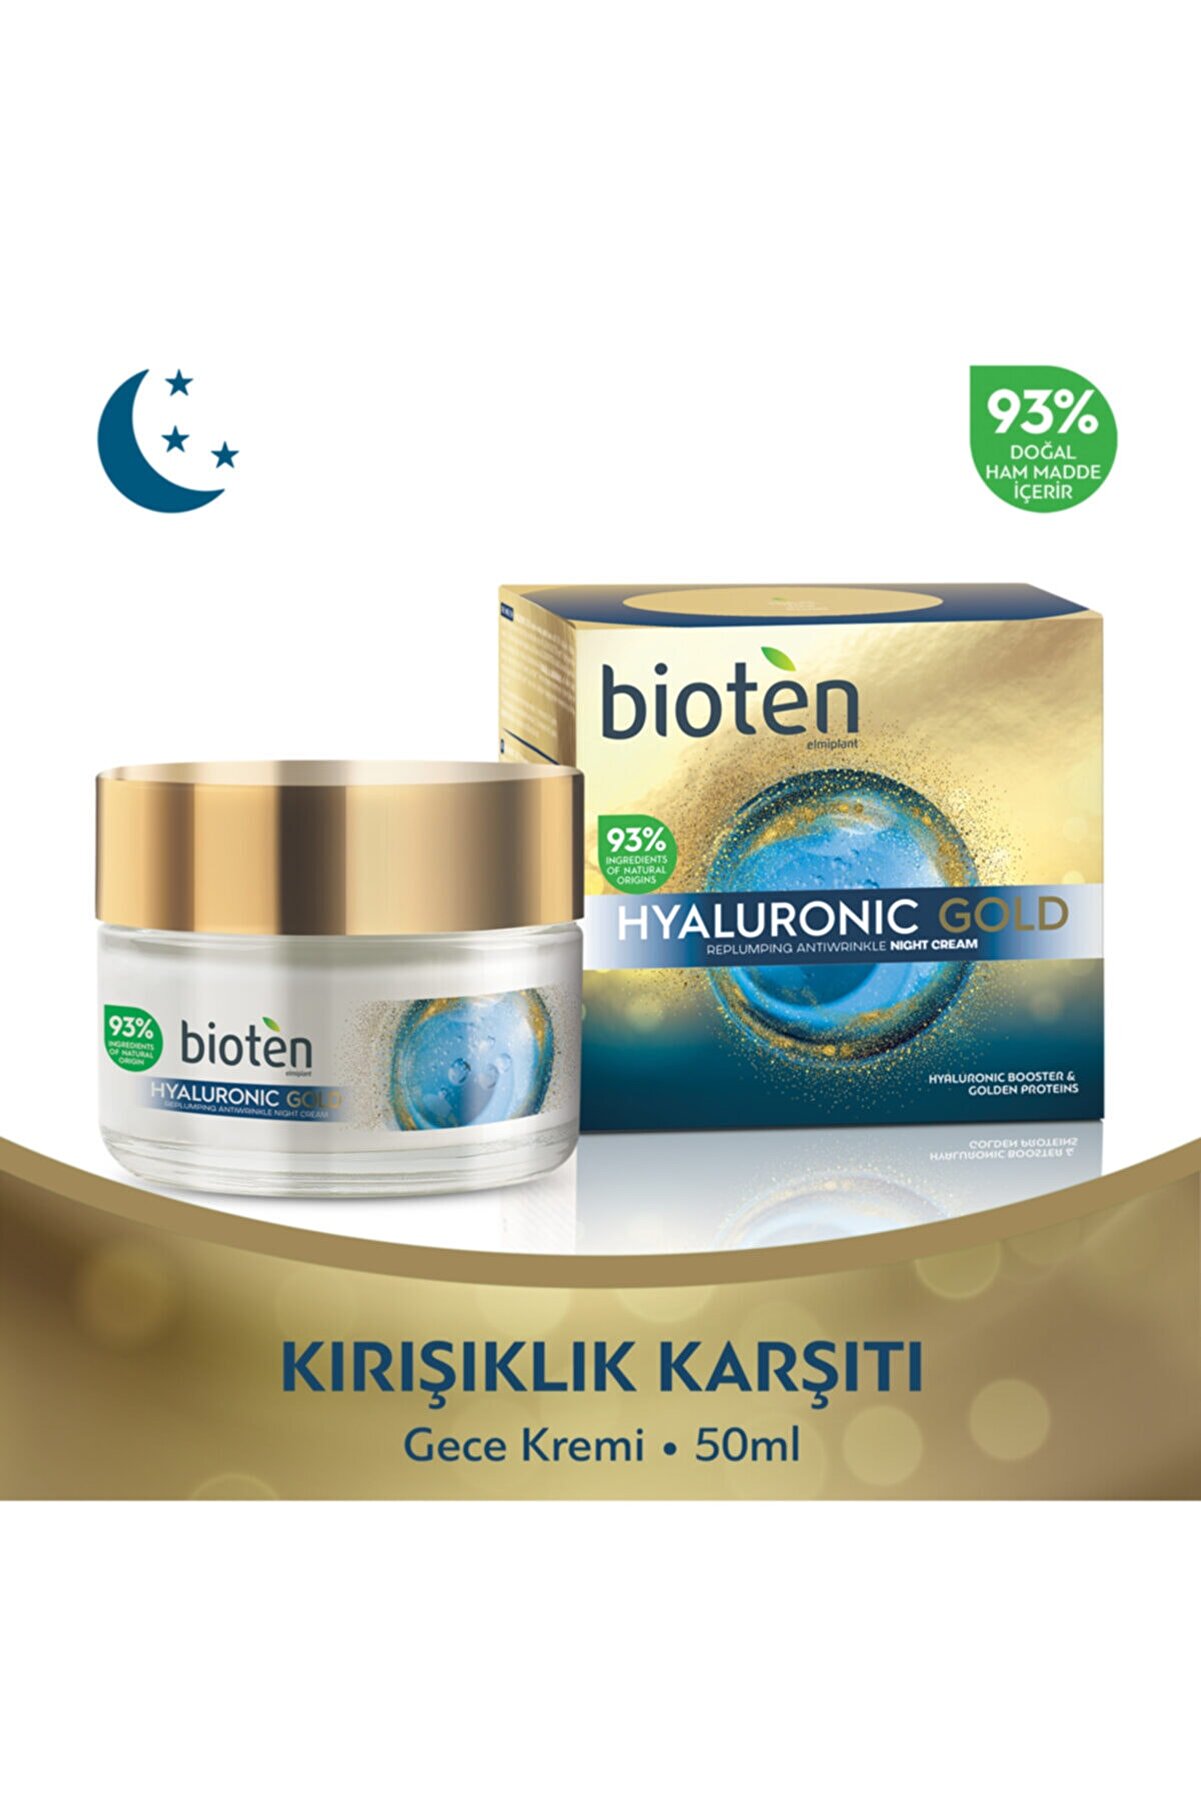 Bioten Hyaluronic Gold Kırışıklık Karşıtı Gece Kremi 50 ml